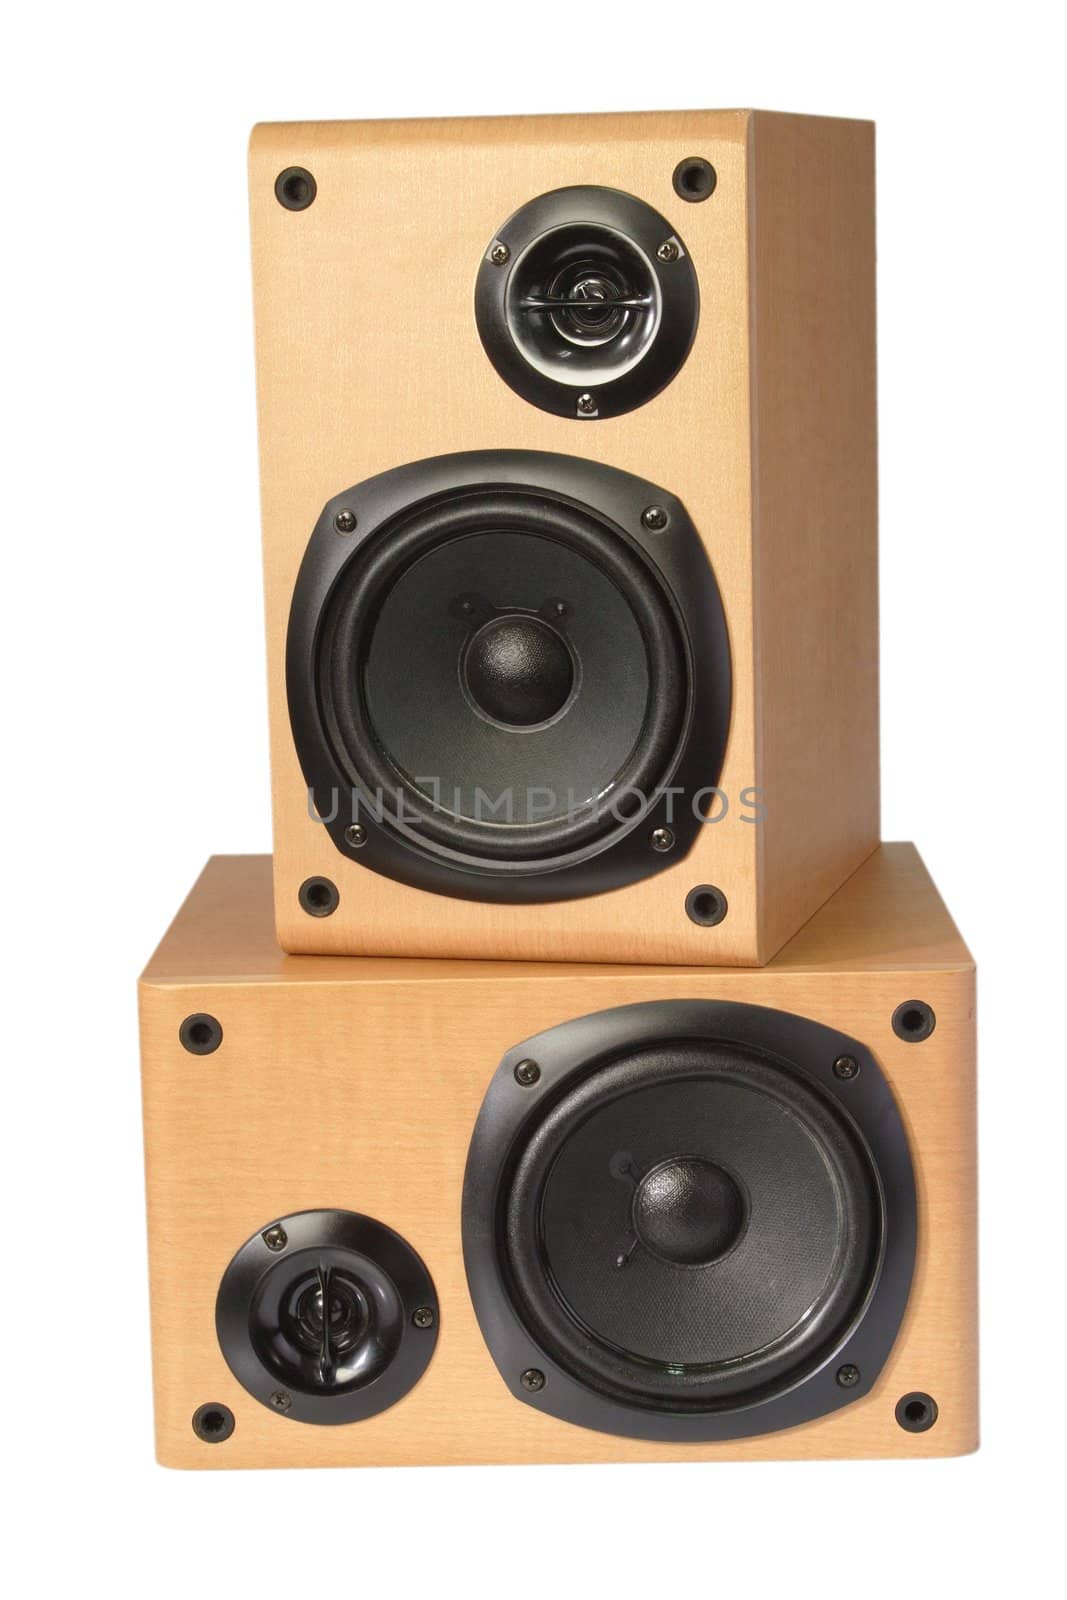 Wooden speaker box by Teamarbeit